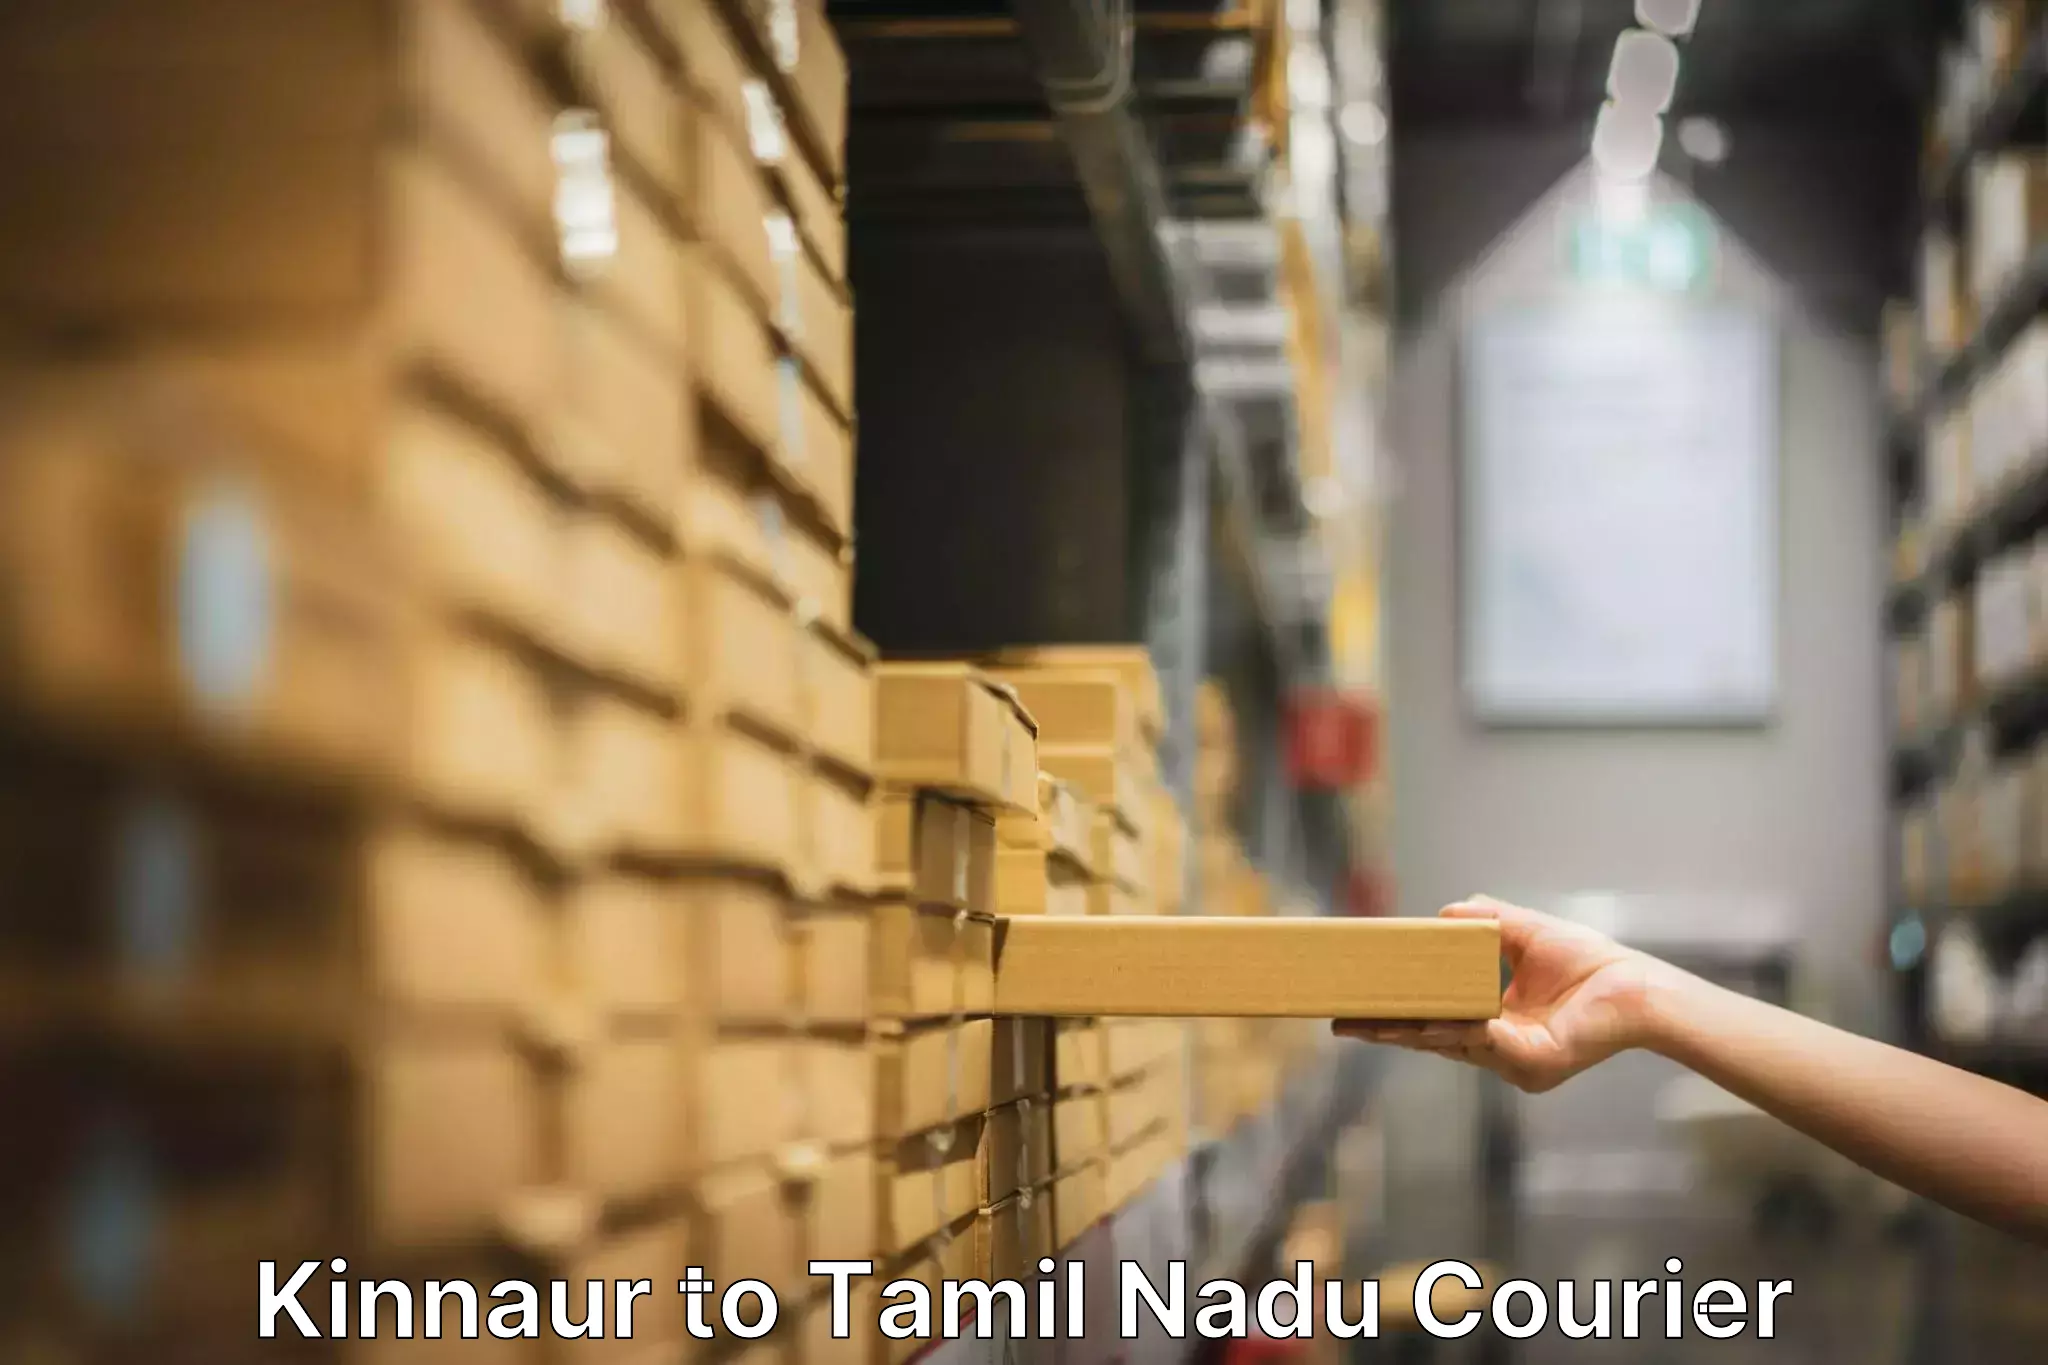 Professional furniture movers Kinnaur to Orathanadu